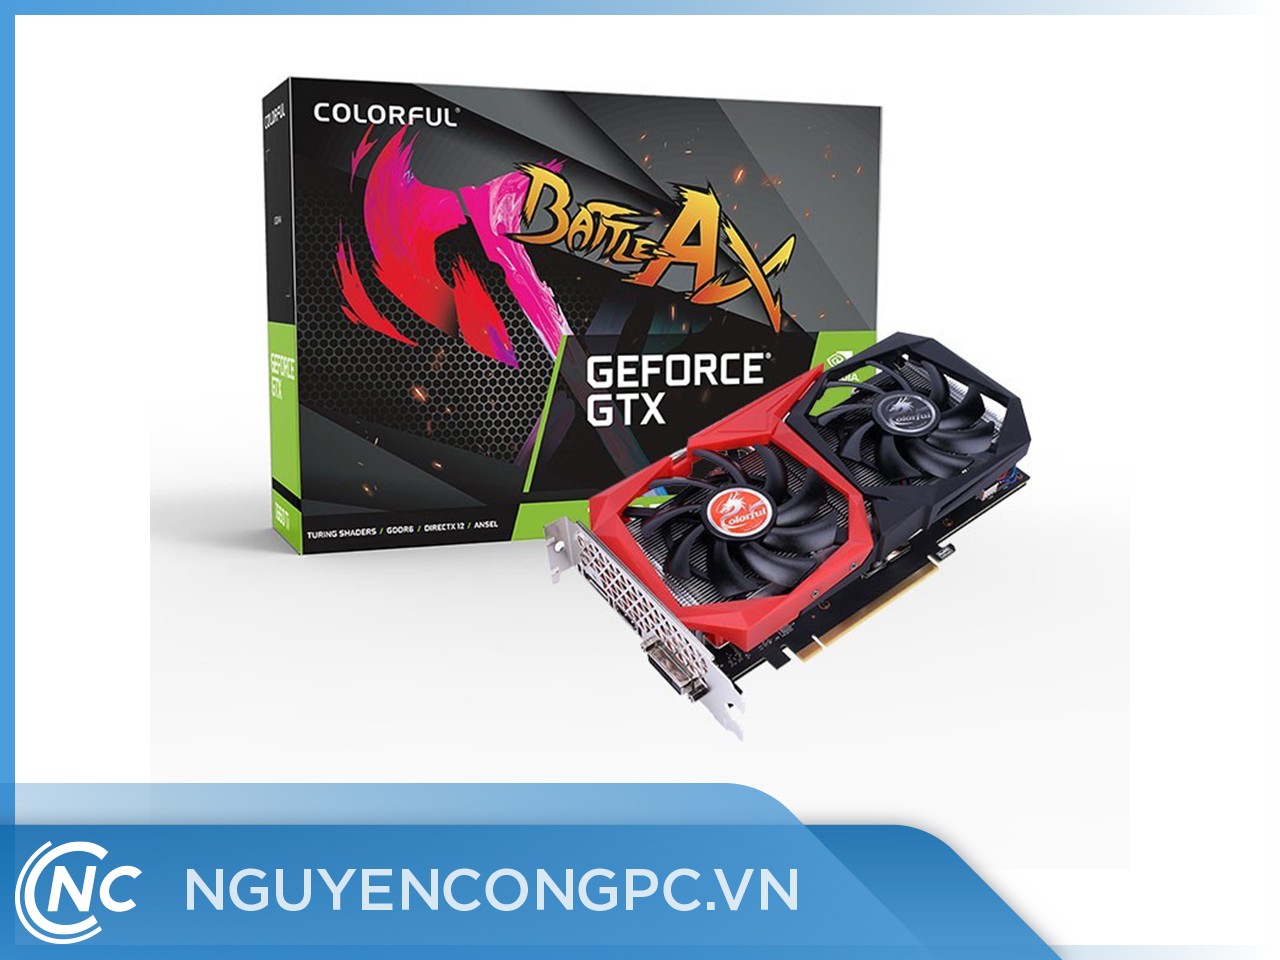 Card Màn Hình Colorful GeForce GTX 1660 Ti NB 6G-V